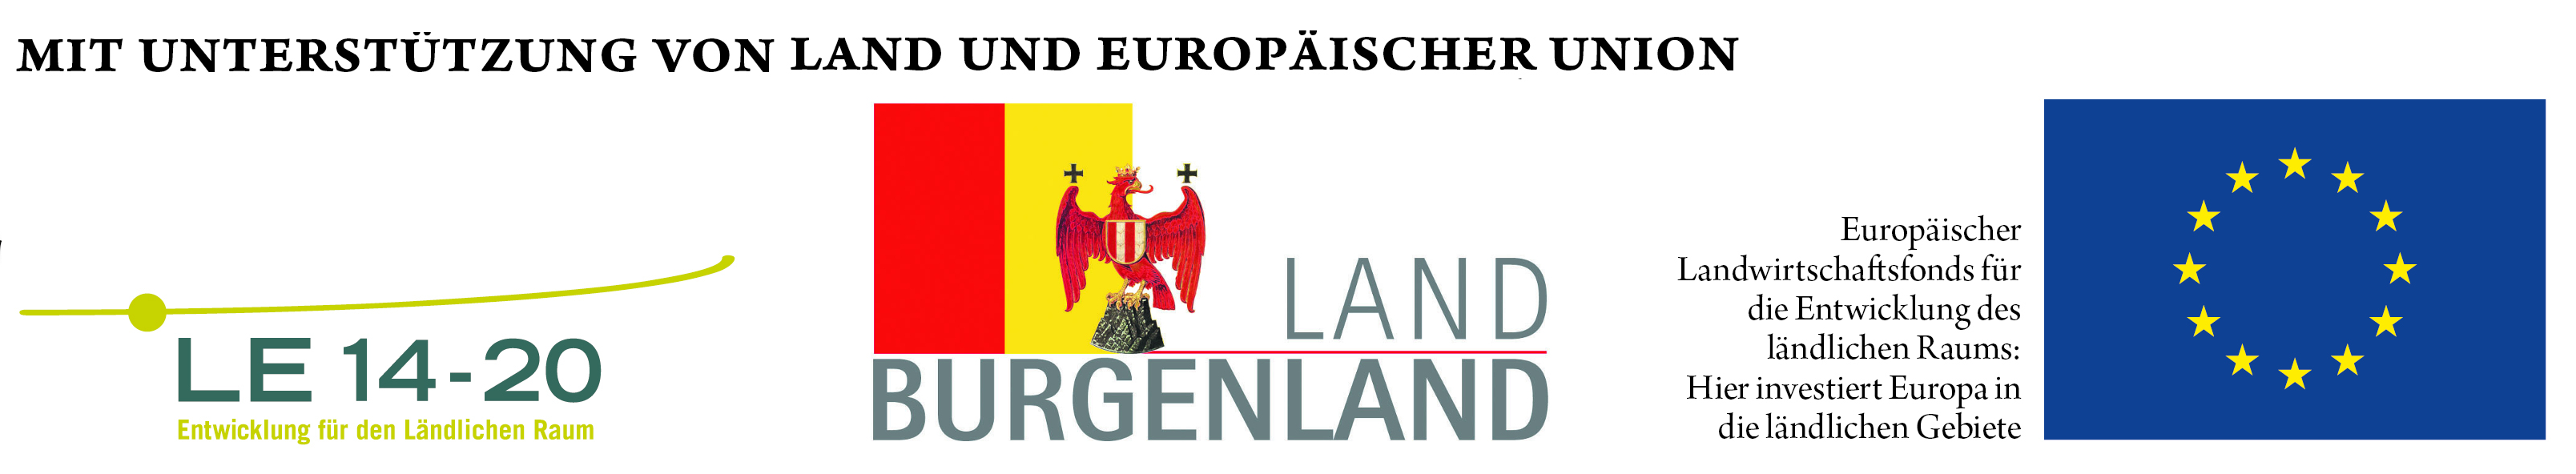 Logos und Schriftzug "Mit Unterstützung von Land und Europäischer Union"